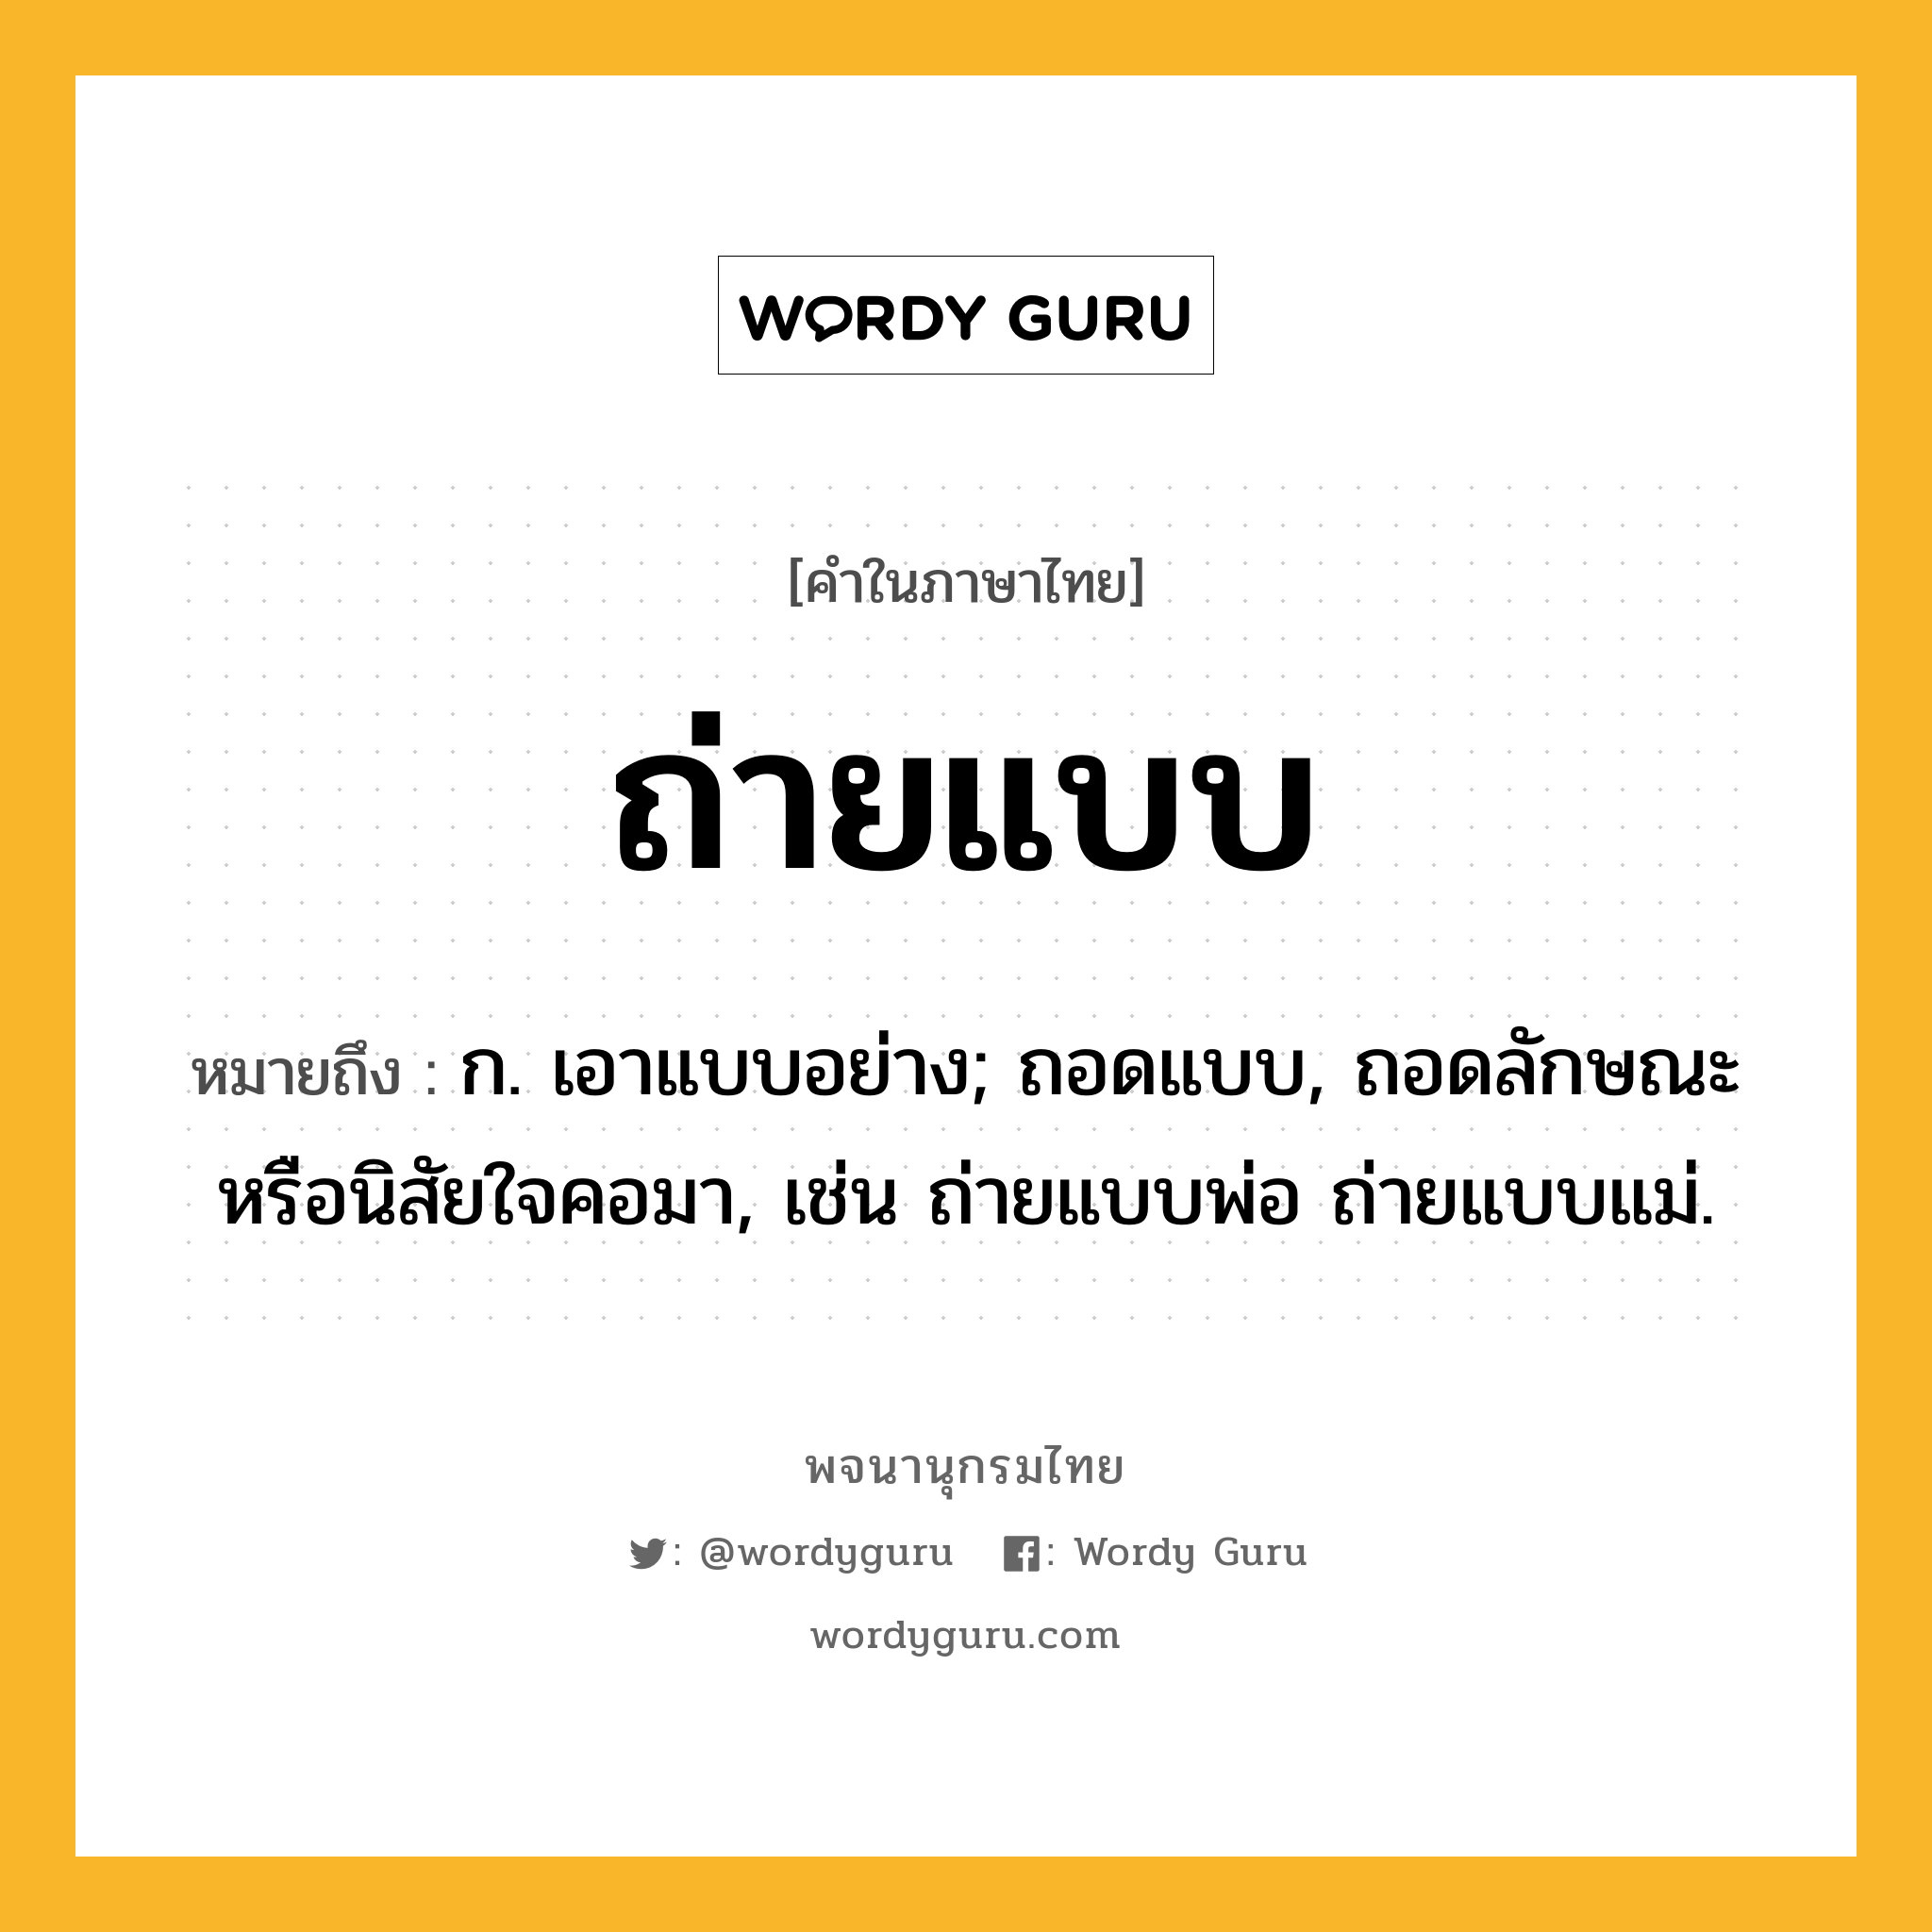 ถ่ายแบบ หมายถึงอะไร?, คำในภาษาไทย ถ่ายแบบ หมายถึง ก. เอาแบบอย่าง; ถอดแบบ, ถอดลักษณะหรือนิสัยใจคอมา, เช่น ถ่ายแบบพ่อ ถ่ายแบบแม่.